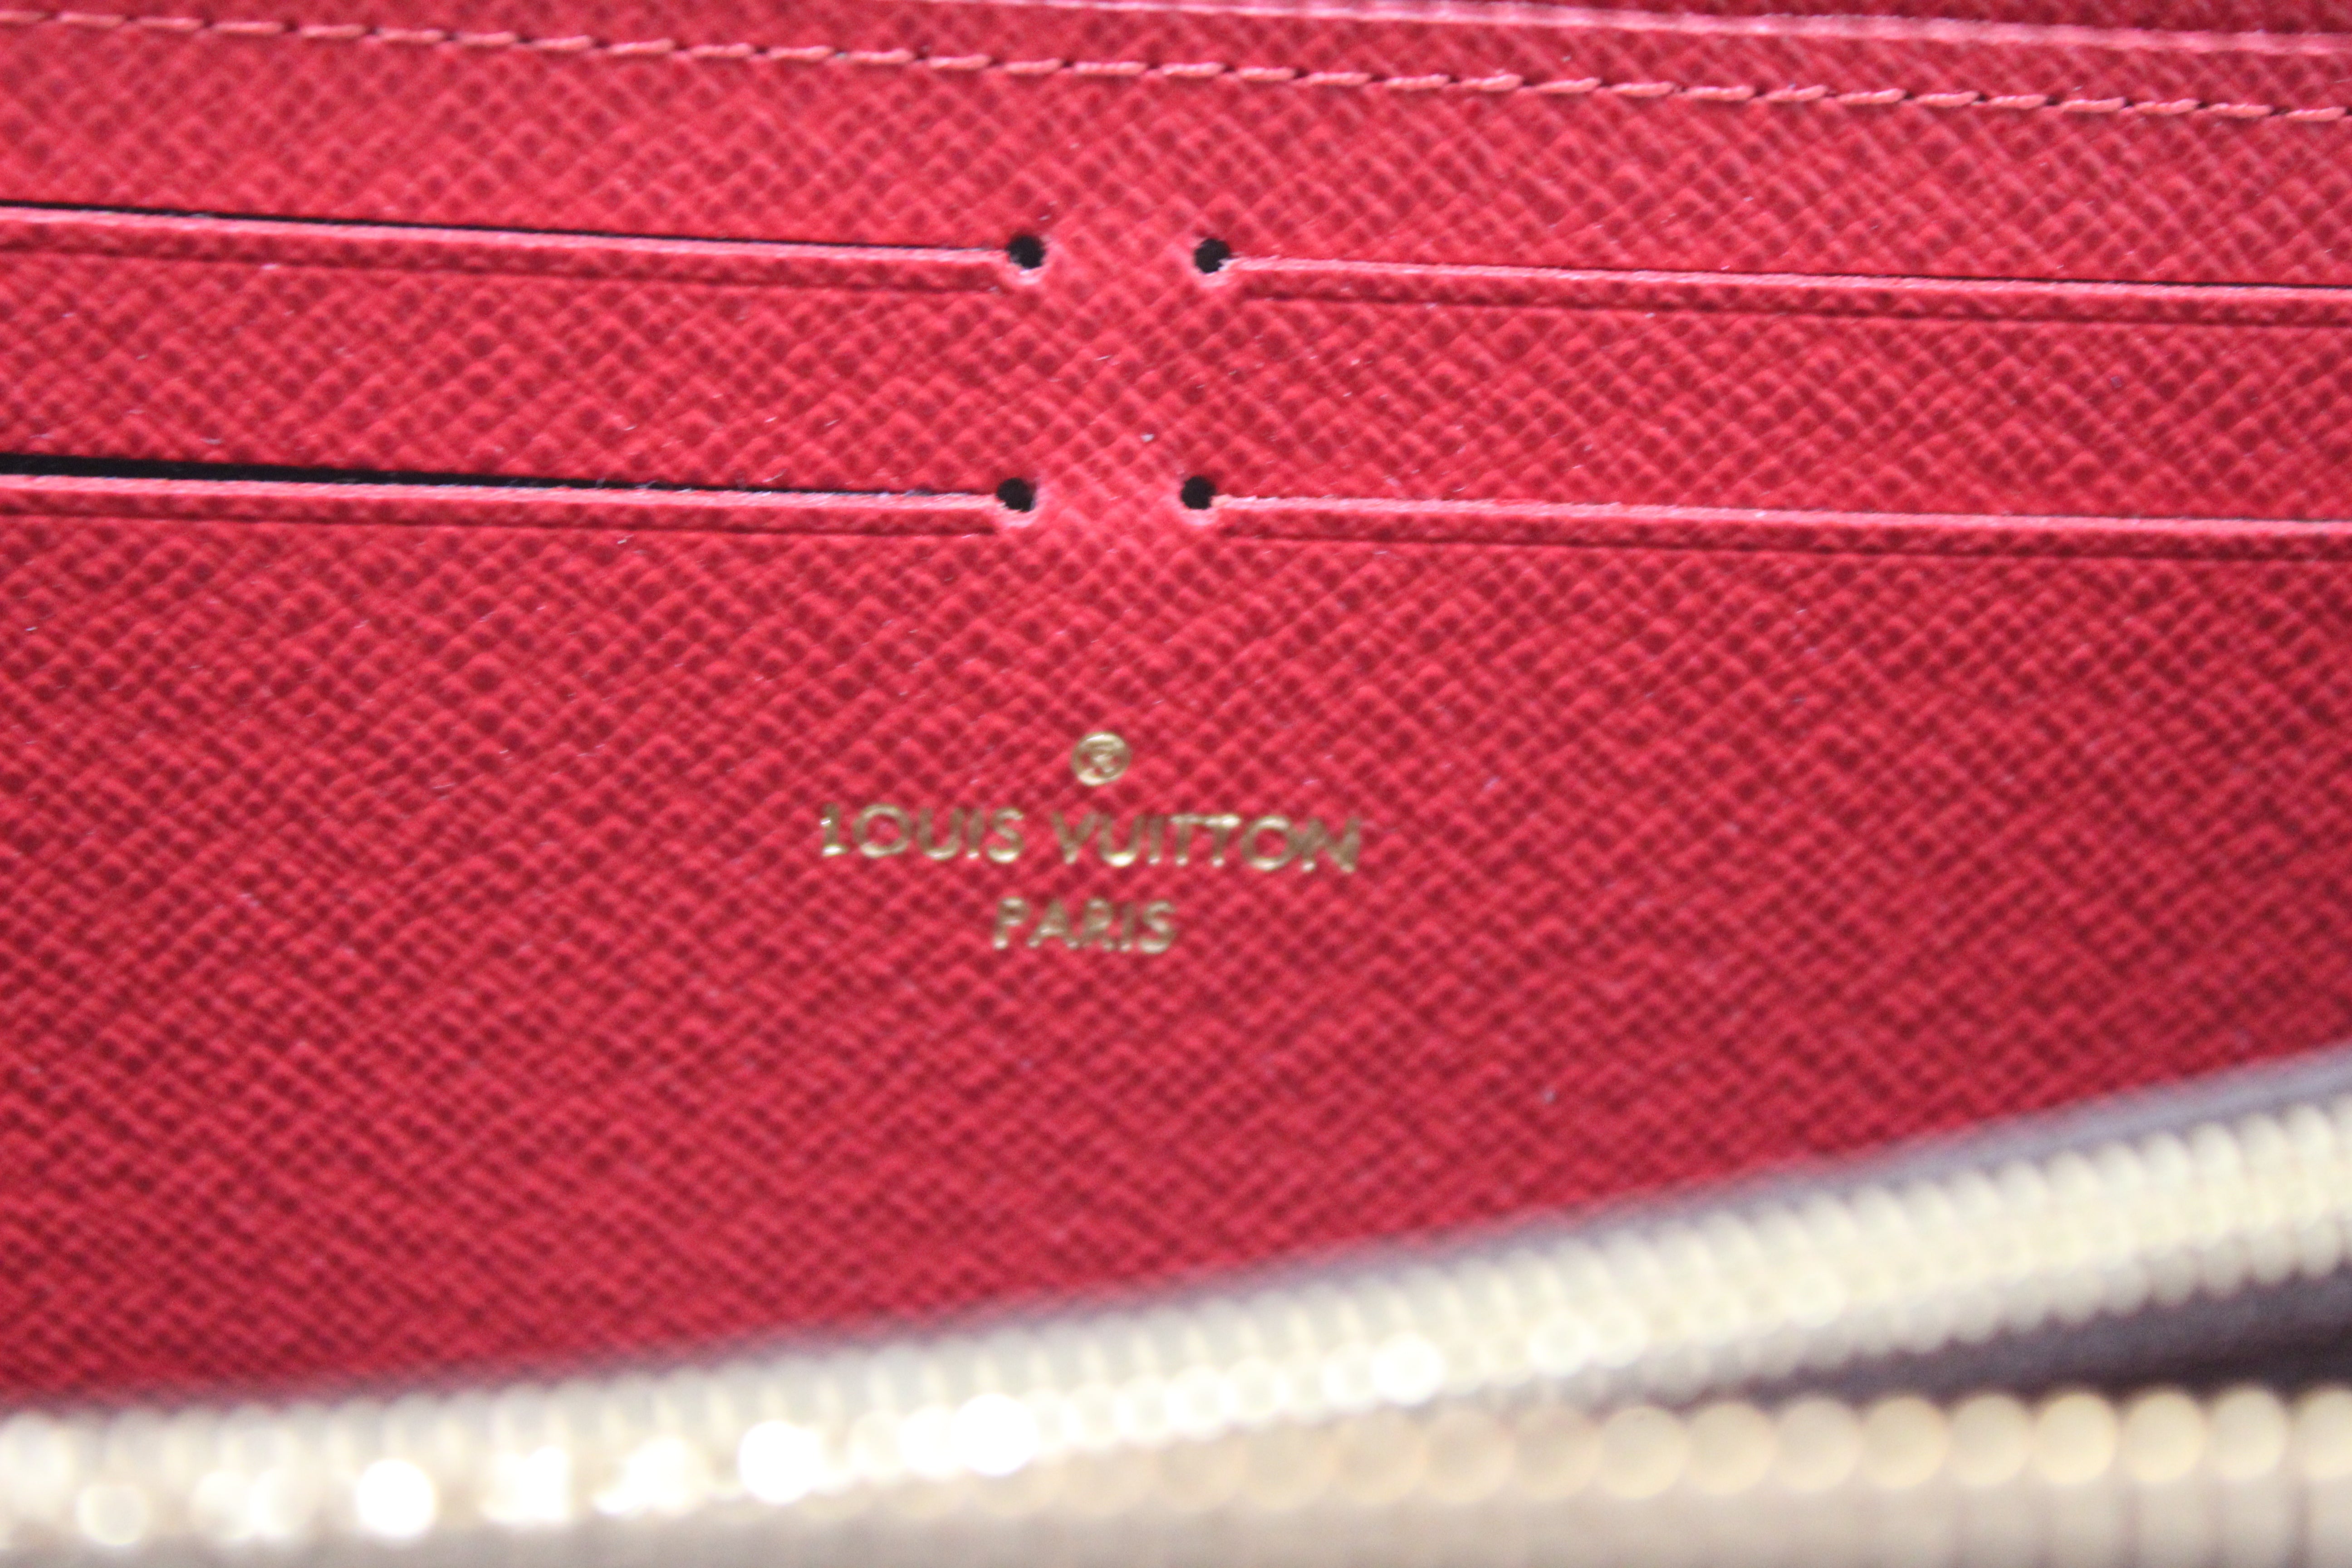 Authentic Louis Vuitton Damier Ebene Canvas Clemence Zippy Wallet